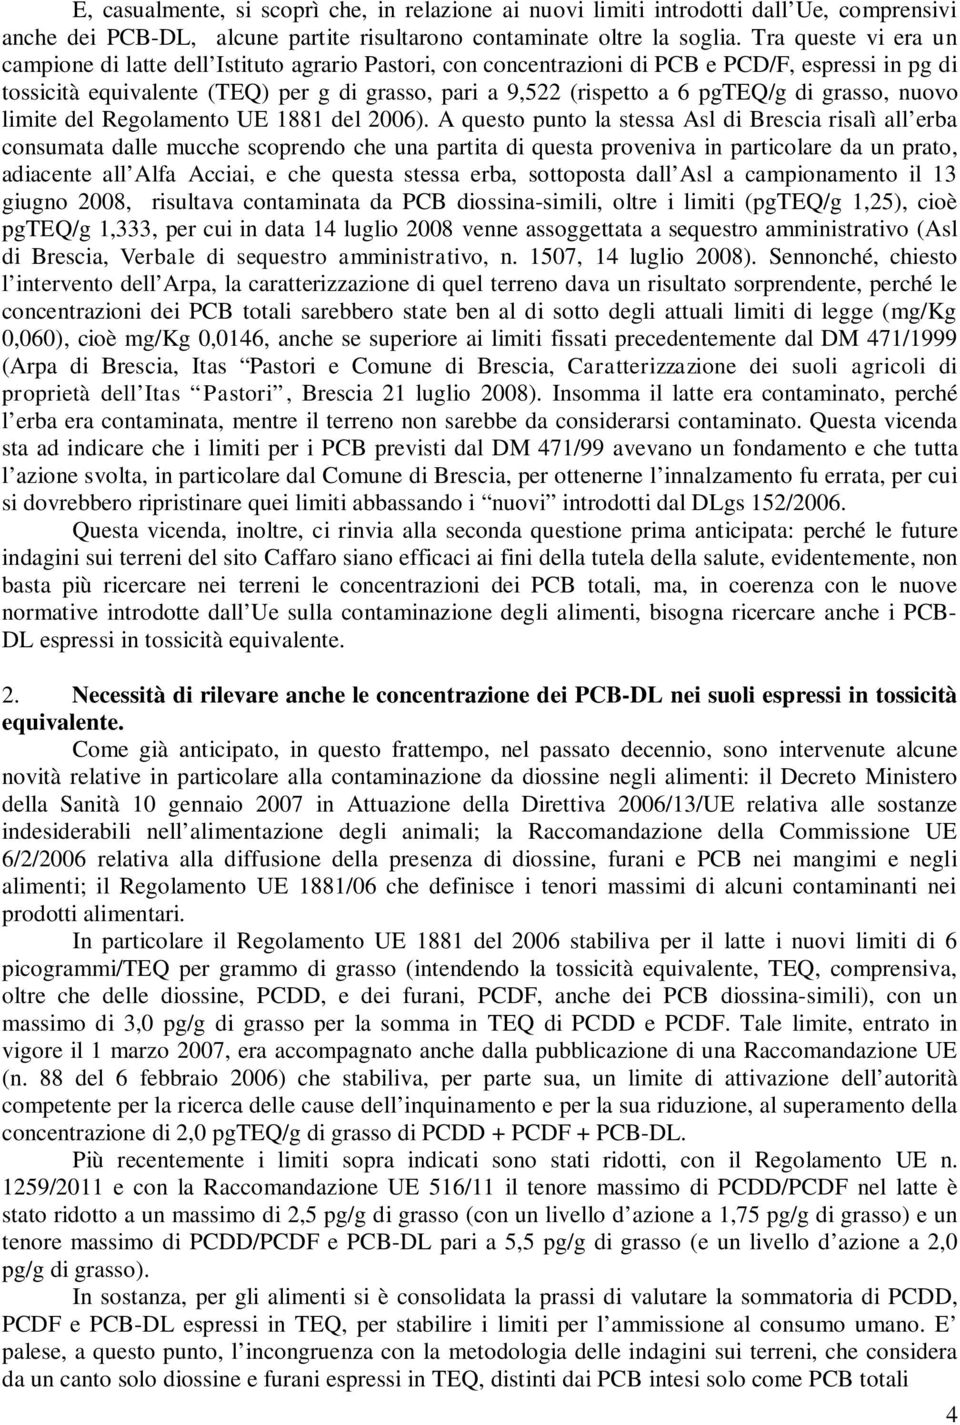 pgteq/g di grasso, nuovo limite del Regolamento UE 1881 del 2006).